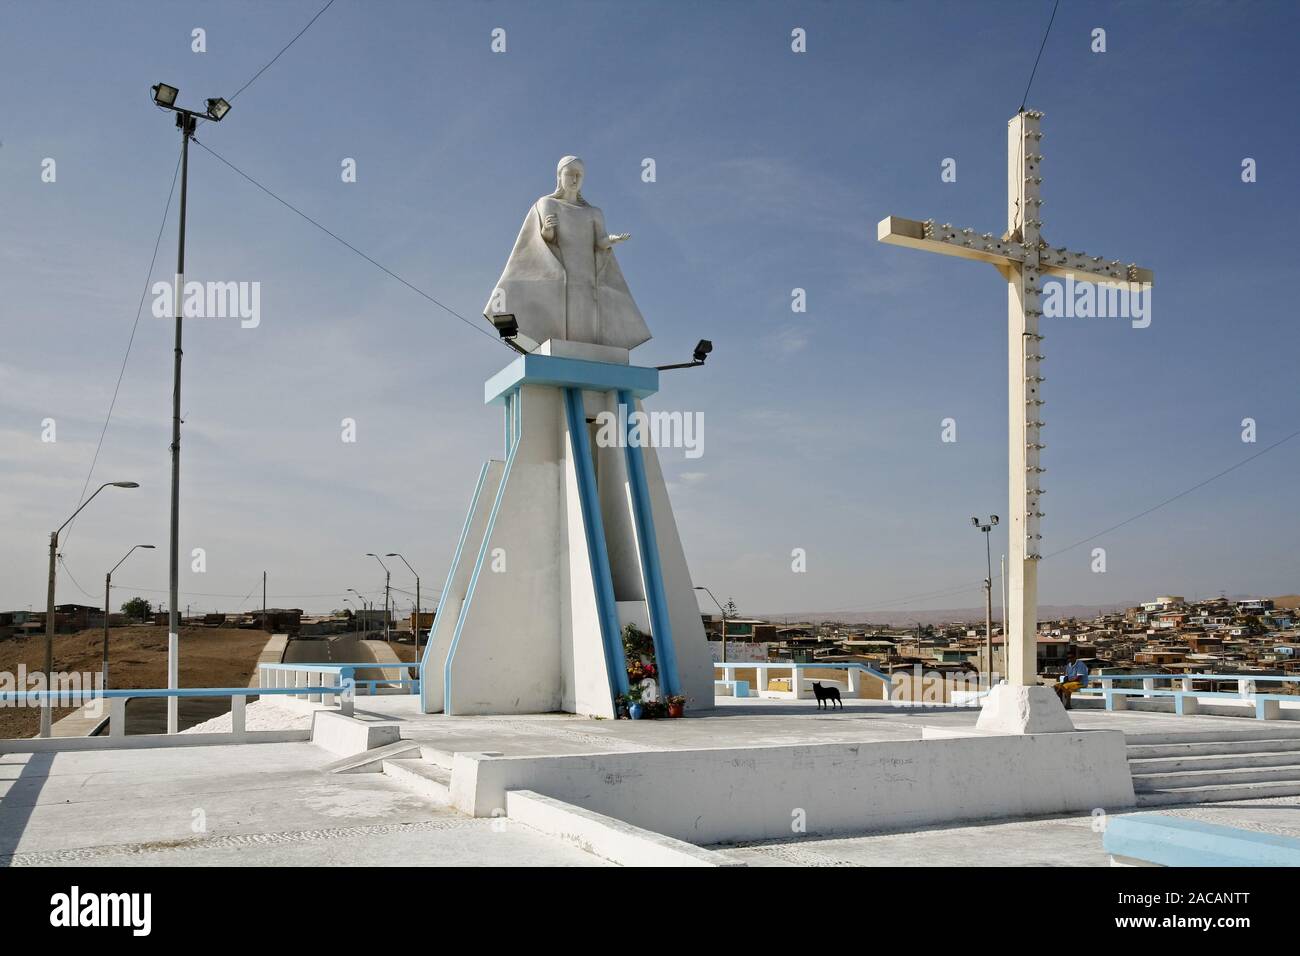 Christusstatue mit Kreuz über der Stadt Arica, Chile, Suedamerika, Christ statue with cross, Arica, Chile, South America Stock Photo